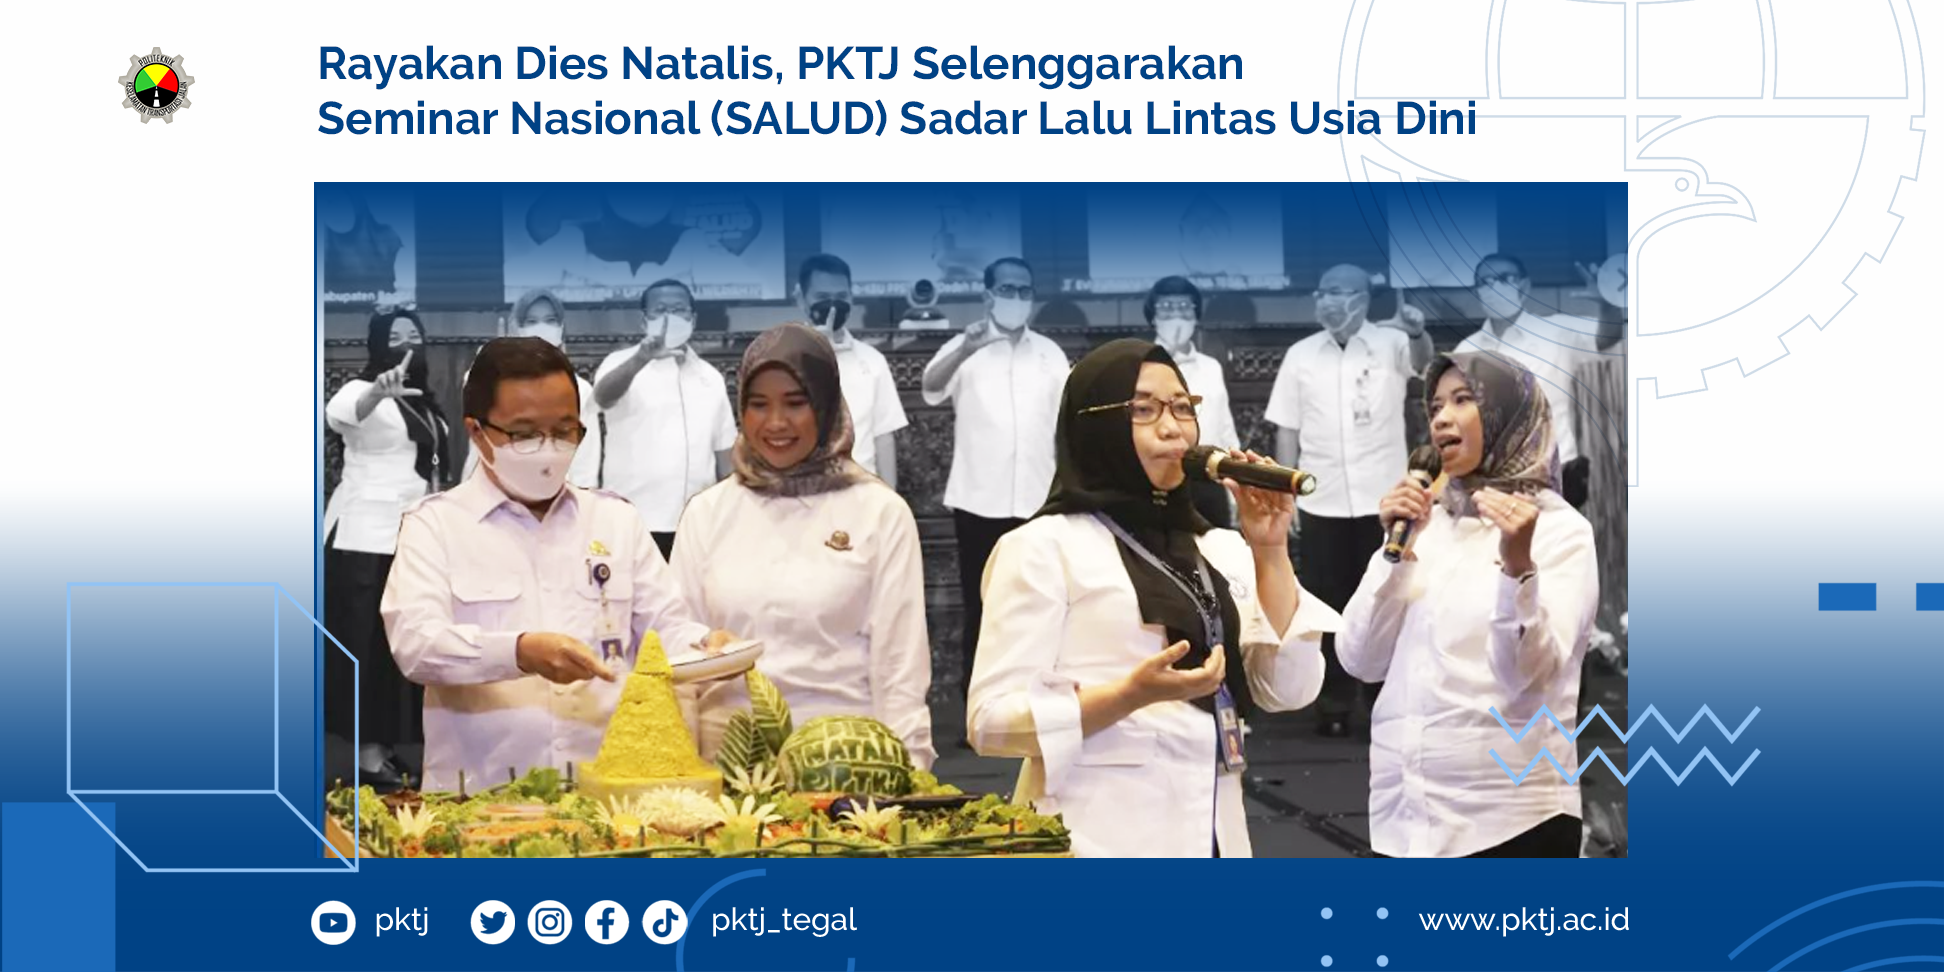 Rayakan Dies Natalis PKTJ Selenggarakan Seminar Nasional SALUD